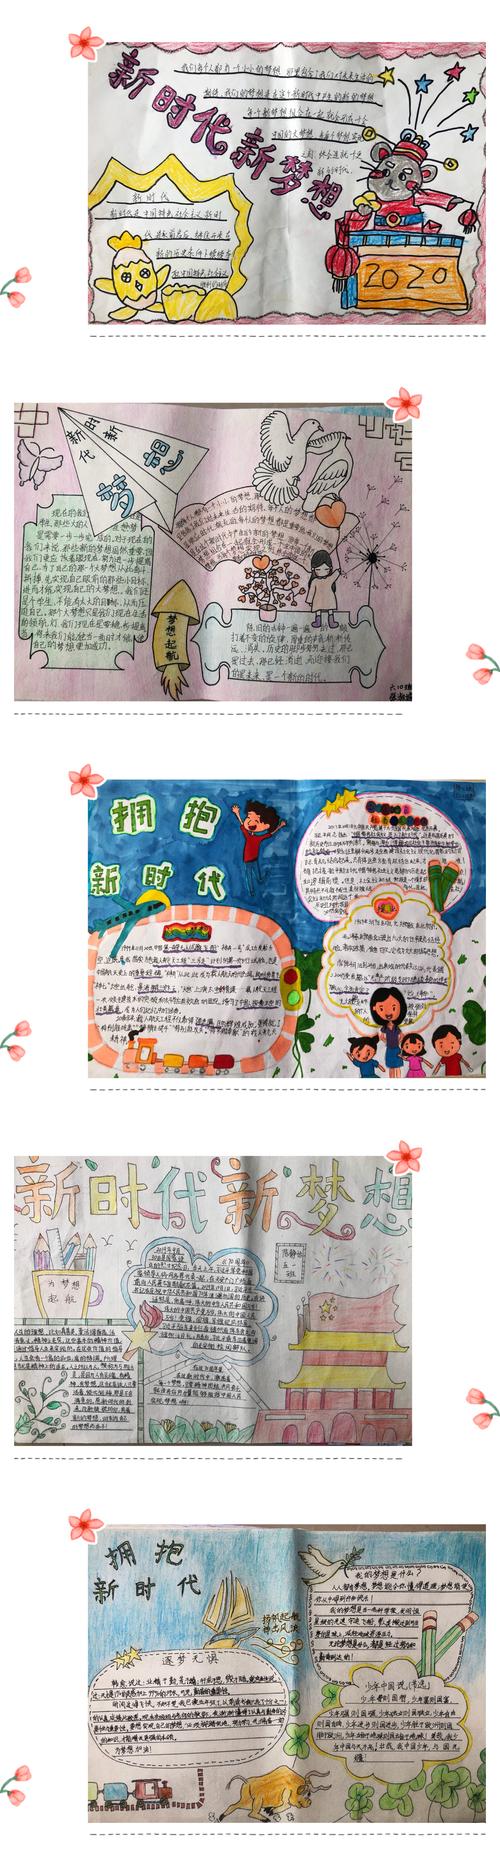 泰和县第三实验小学举行新时代新梦想主题绘画手抄报比赛